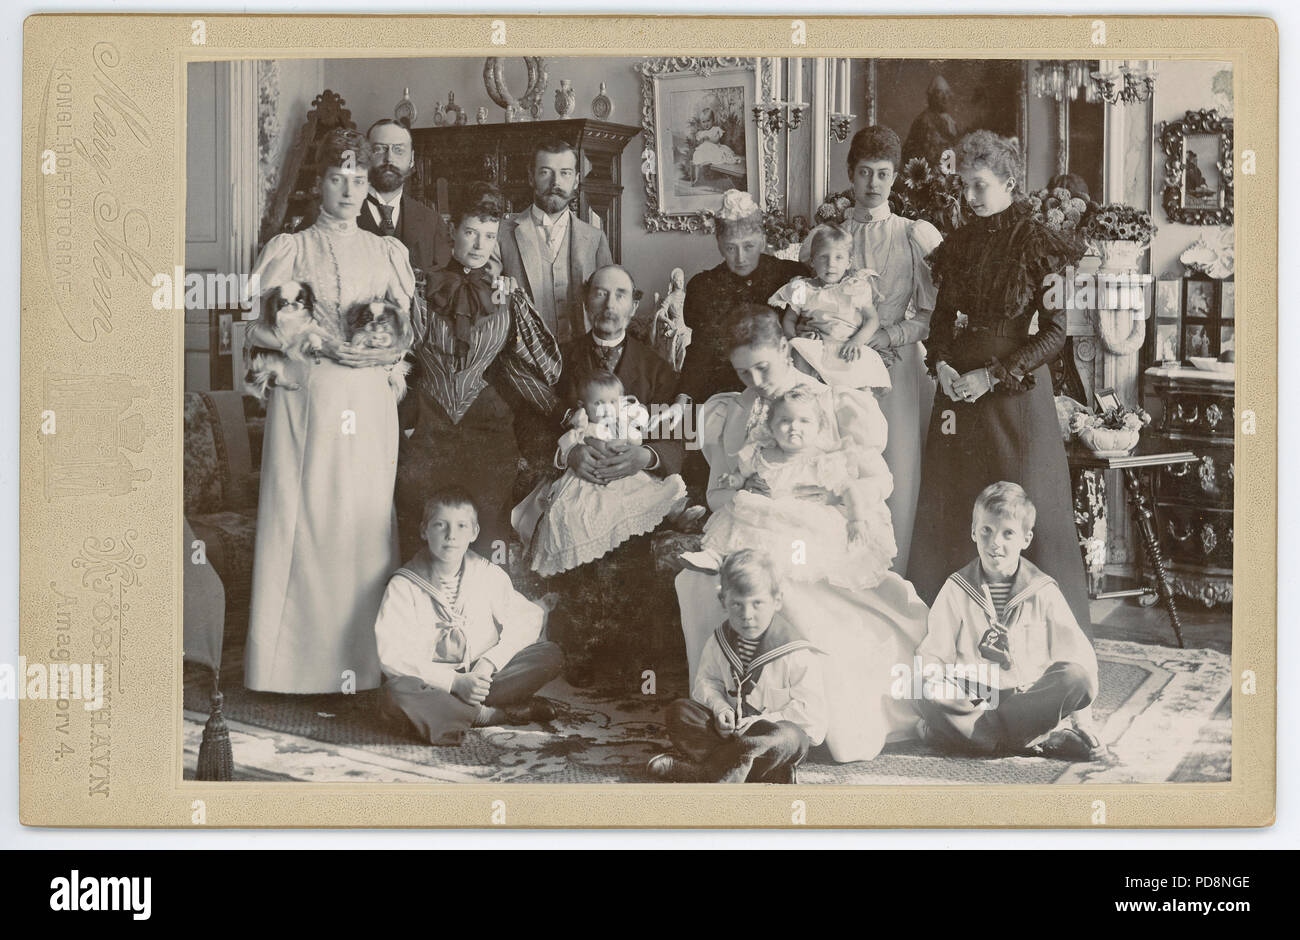 Zar Nikolaus II. von Russland. 1868-1918. Der letzte Kaiser von Russland. Hier im Bild mit seiner Frau Alexandra 1894 und dem dänischen König Christian IX in der Mitte zusammen mit dänischen Royals. Stockfoto